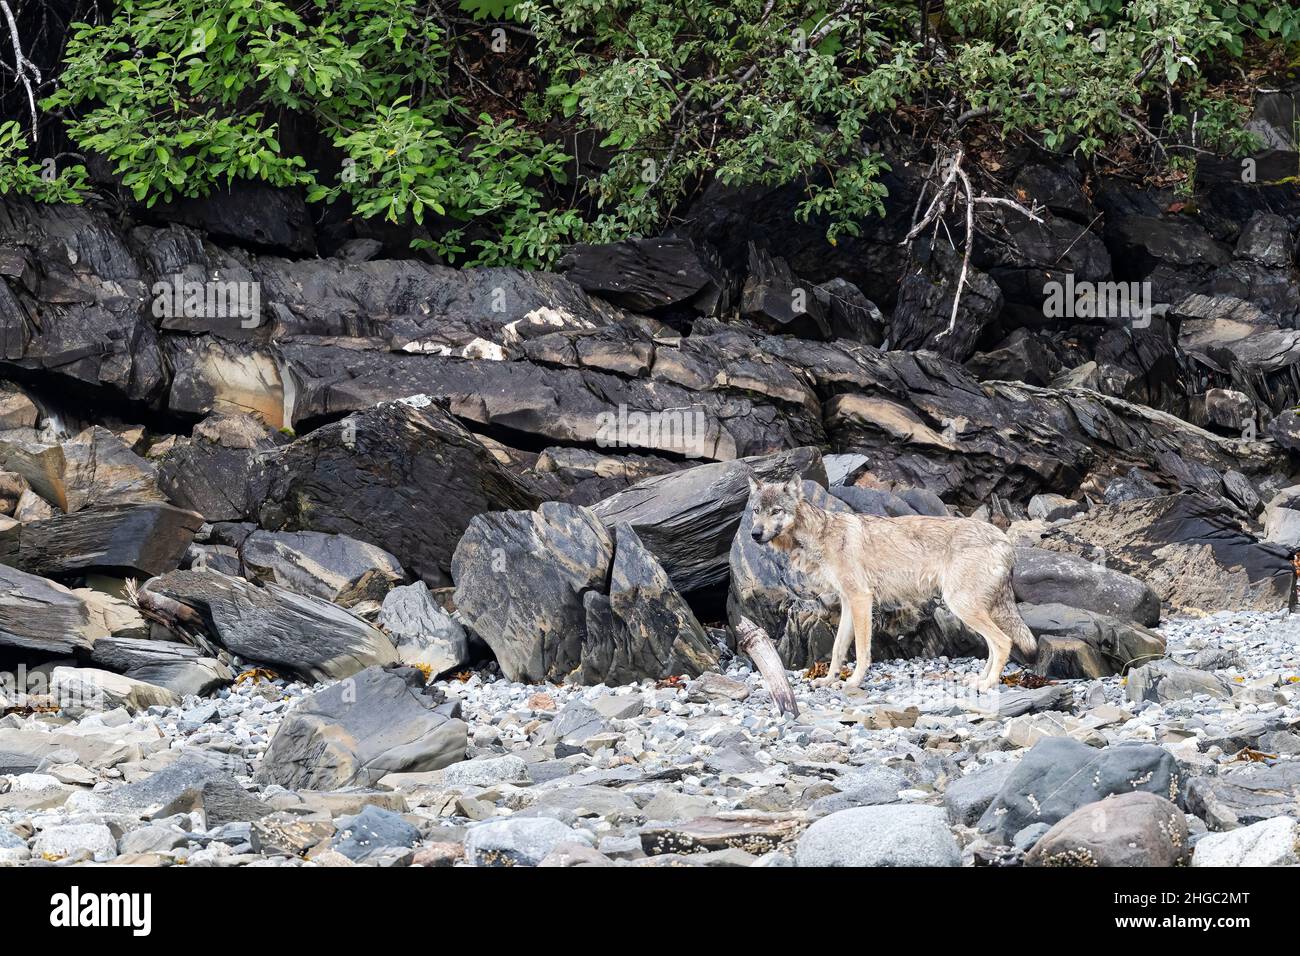 Le loup gris adulte Canis lupus, le long du rivage dans le parc national de Glacier Bay, au sud-est de l'Alaska, aux États-Unis. Banque D'Images